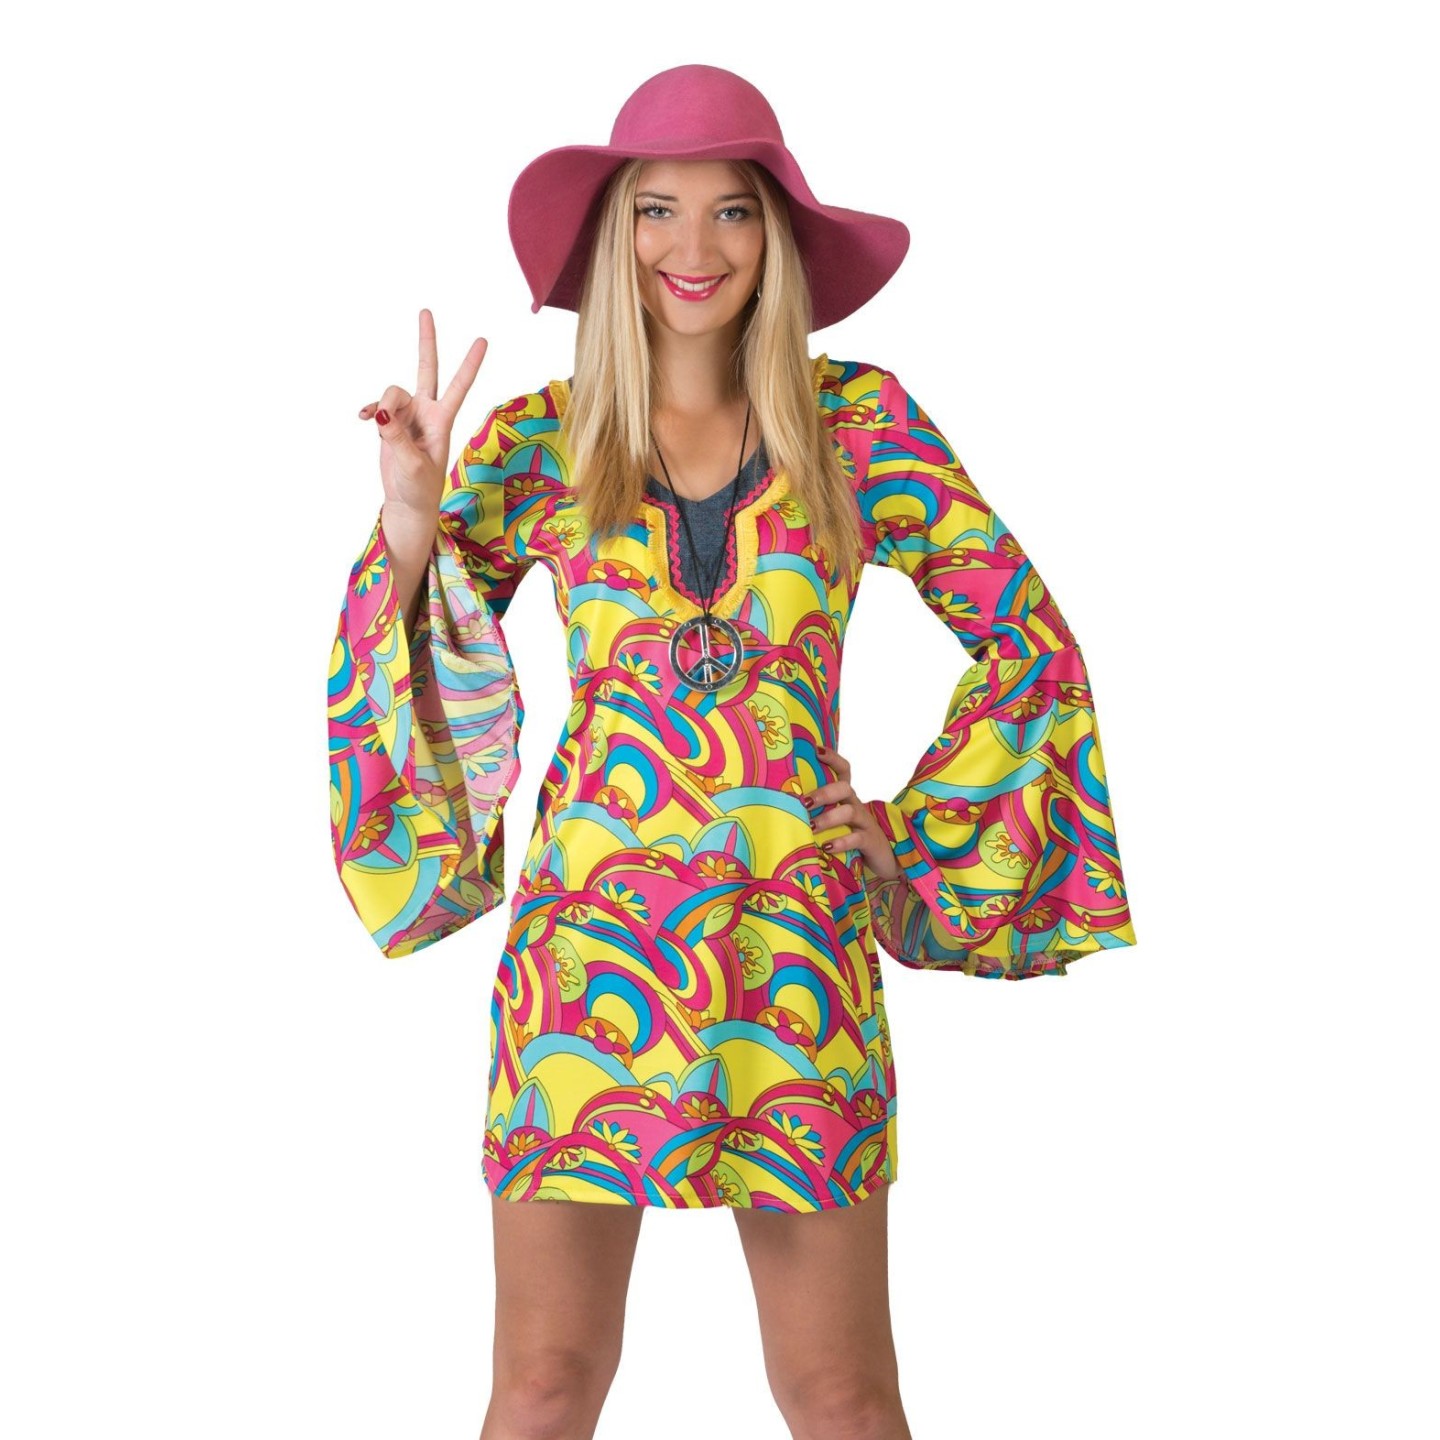 ongezond Vertrappen vaardigheid Hippie kostuum carnaval bestellen ? | Jokershop verkleedkledij